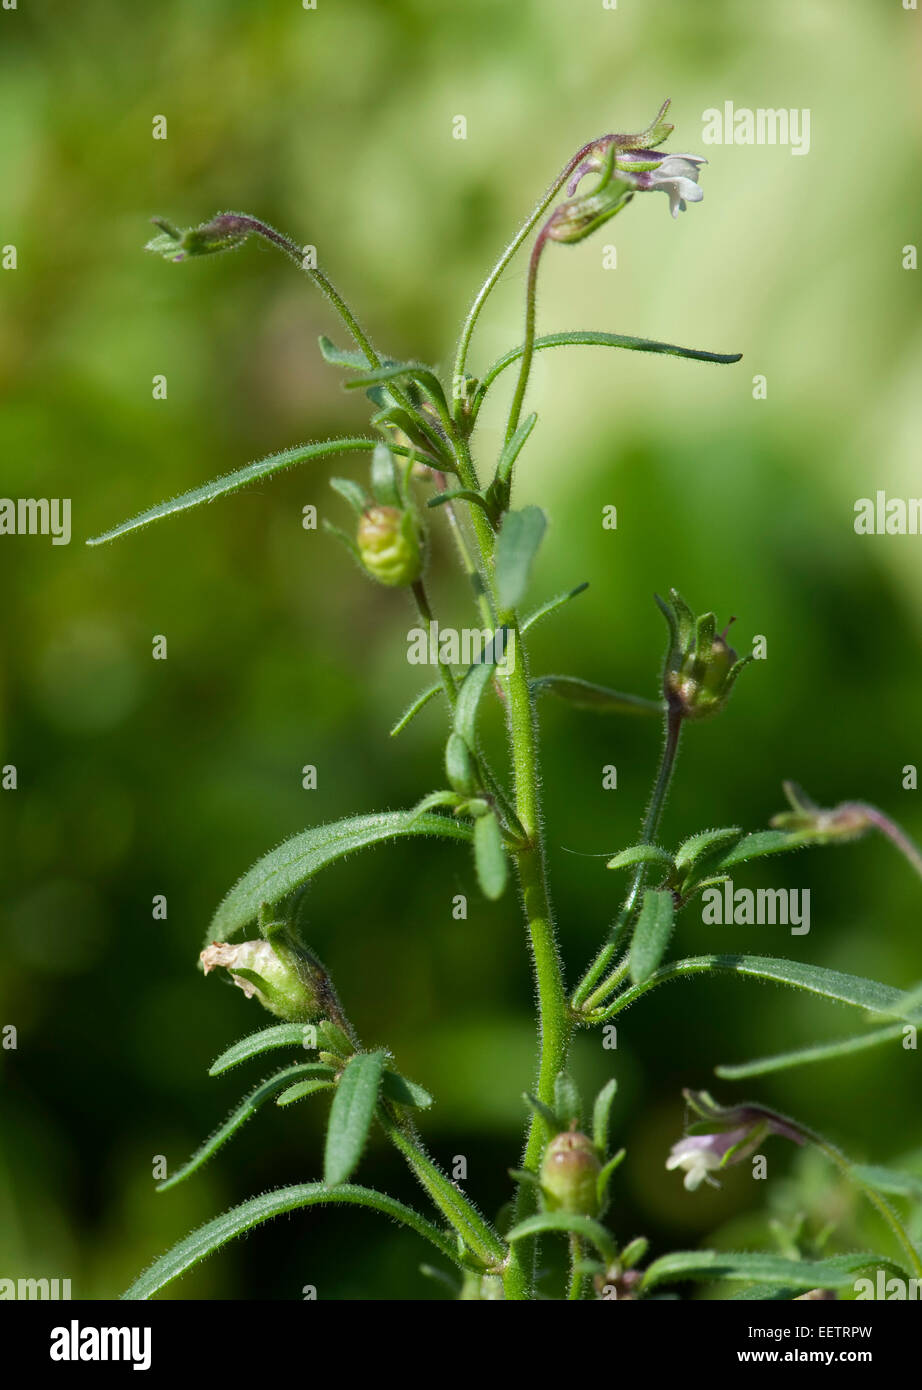 Petite linaire commune ou le chénorhinum mineur, Chaenorhinum minus, une petite plante en fleurs dans un jardin, Berkshire, Angleterre, Royaume-Uni, juin Banque D'Images